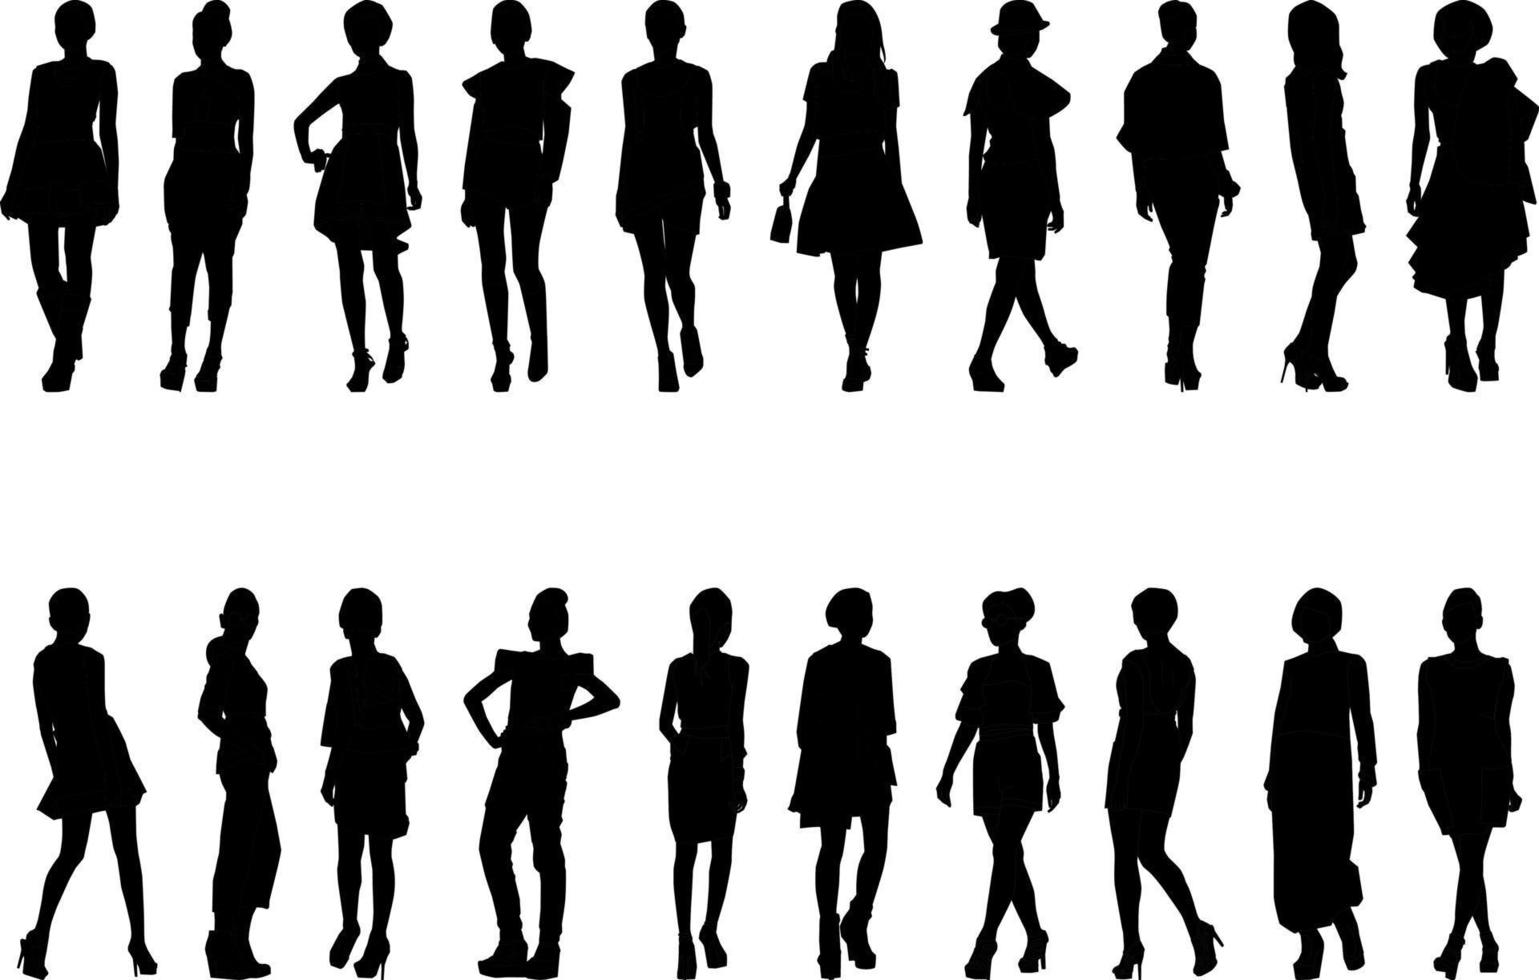 silueta de actividad femenina de moda, alta resolución y realista. vector